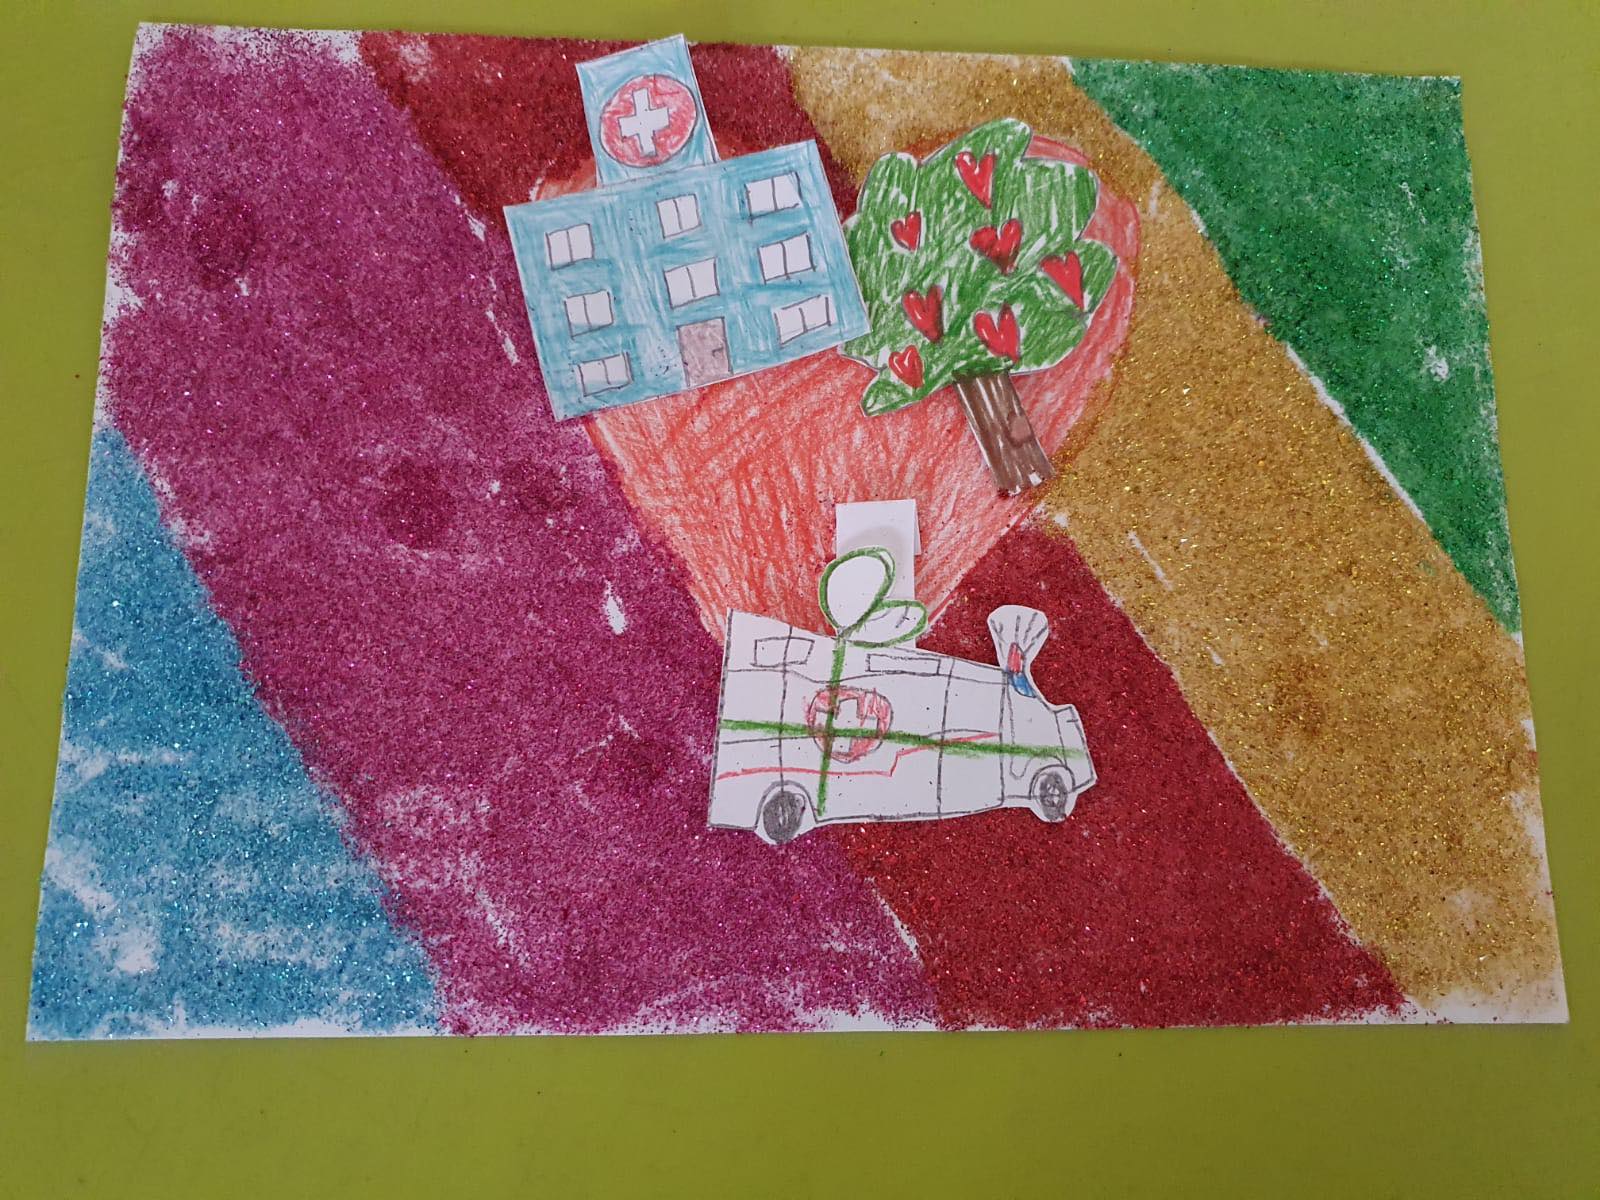 Praca plastyczna wykonana przez dzieco. Przedstawia ambulans, szpital i serce na kolorowym tle.